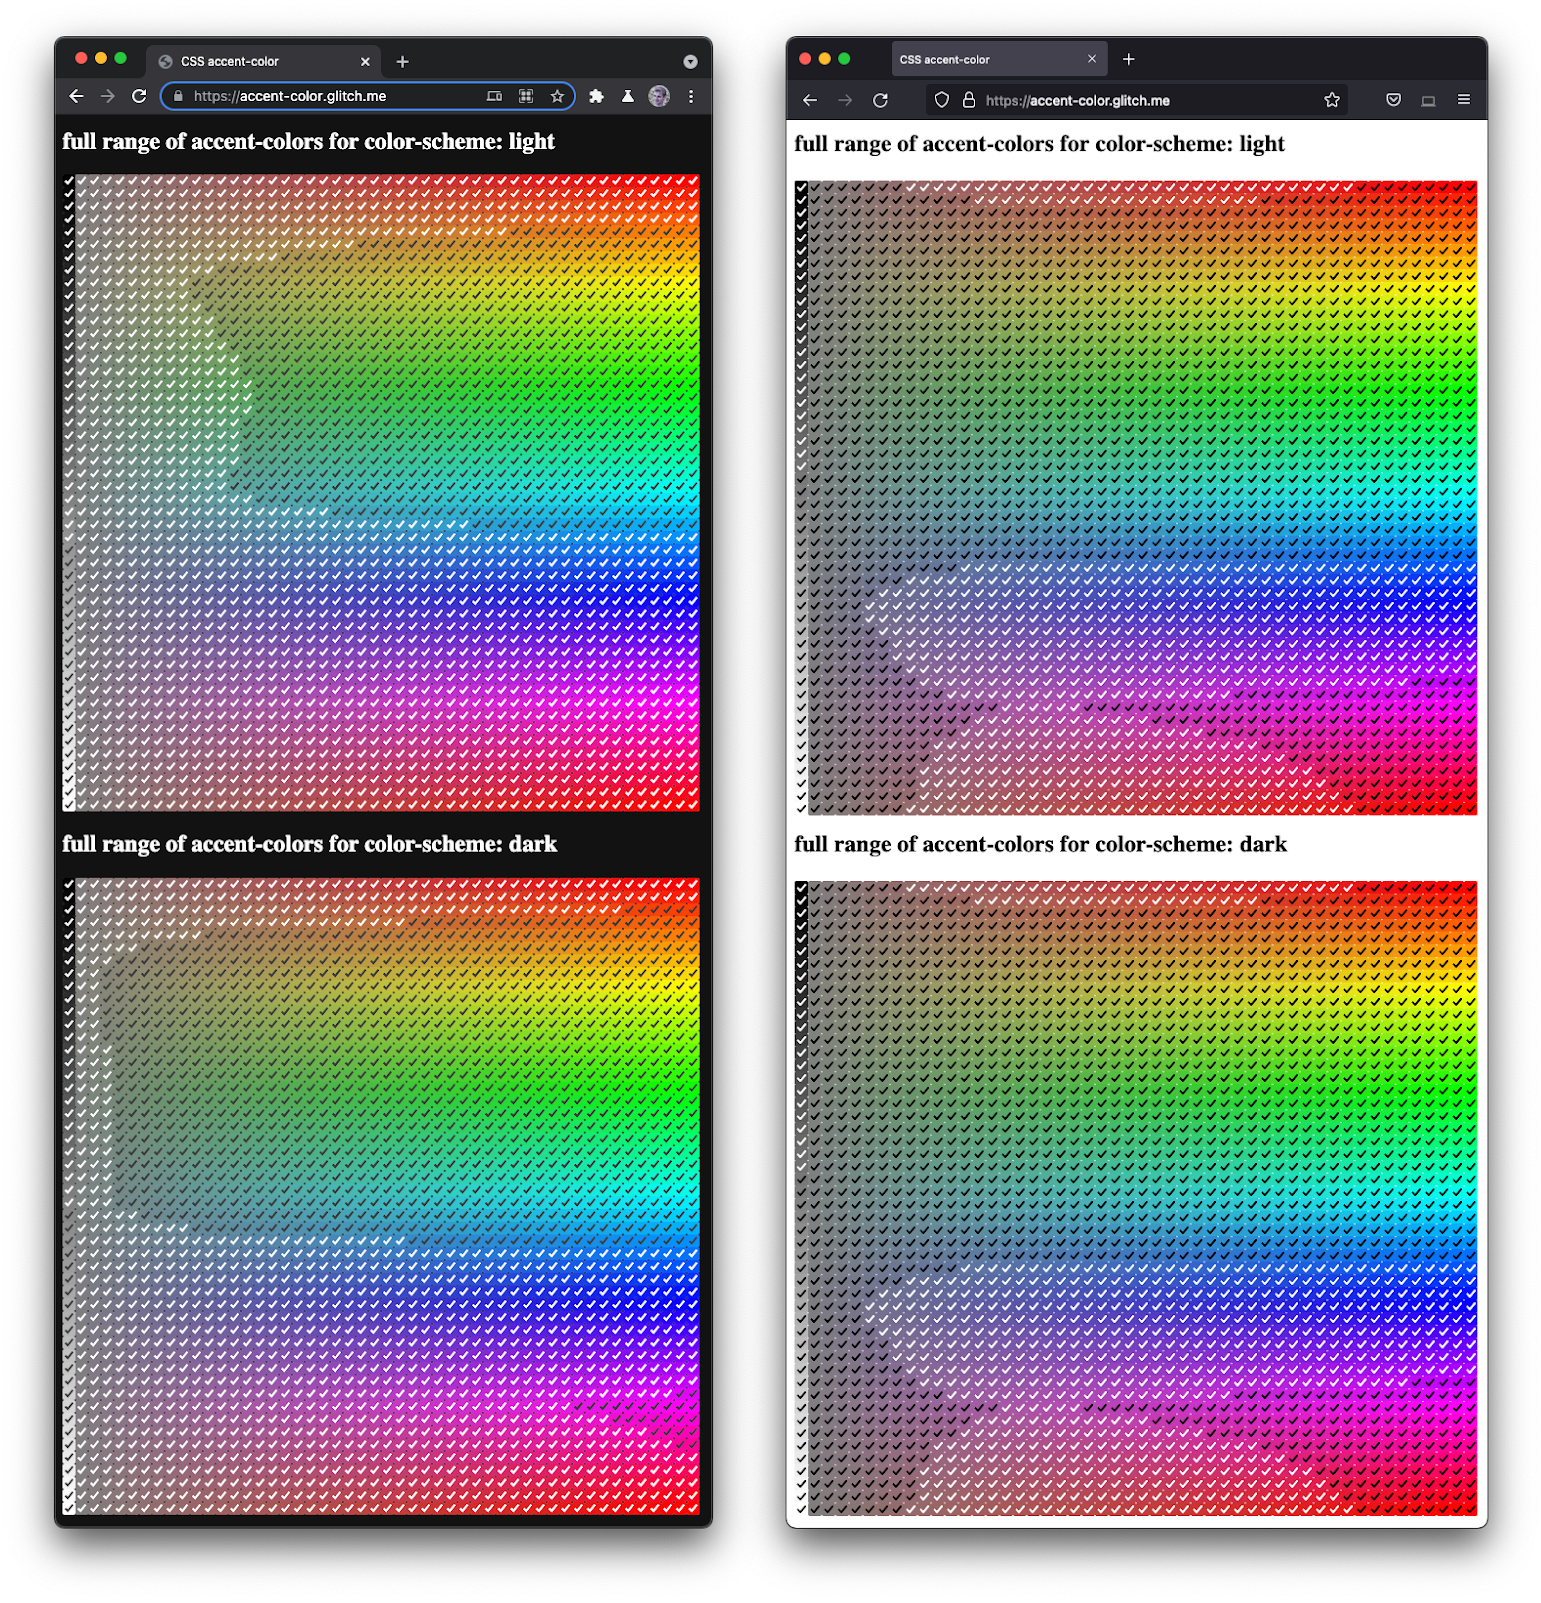 Firefox ve Chromium&#39;un, çeşitli tonlarda ve koyuluklarda tam bir onay kutusu yelpazesinin yan yana gösterildiği ekran görüntüsü.